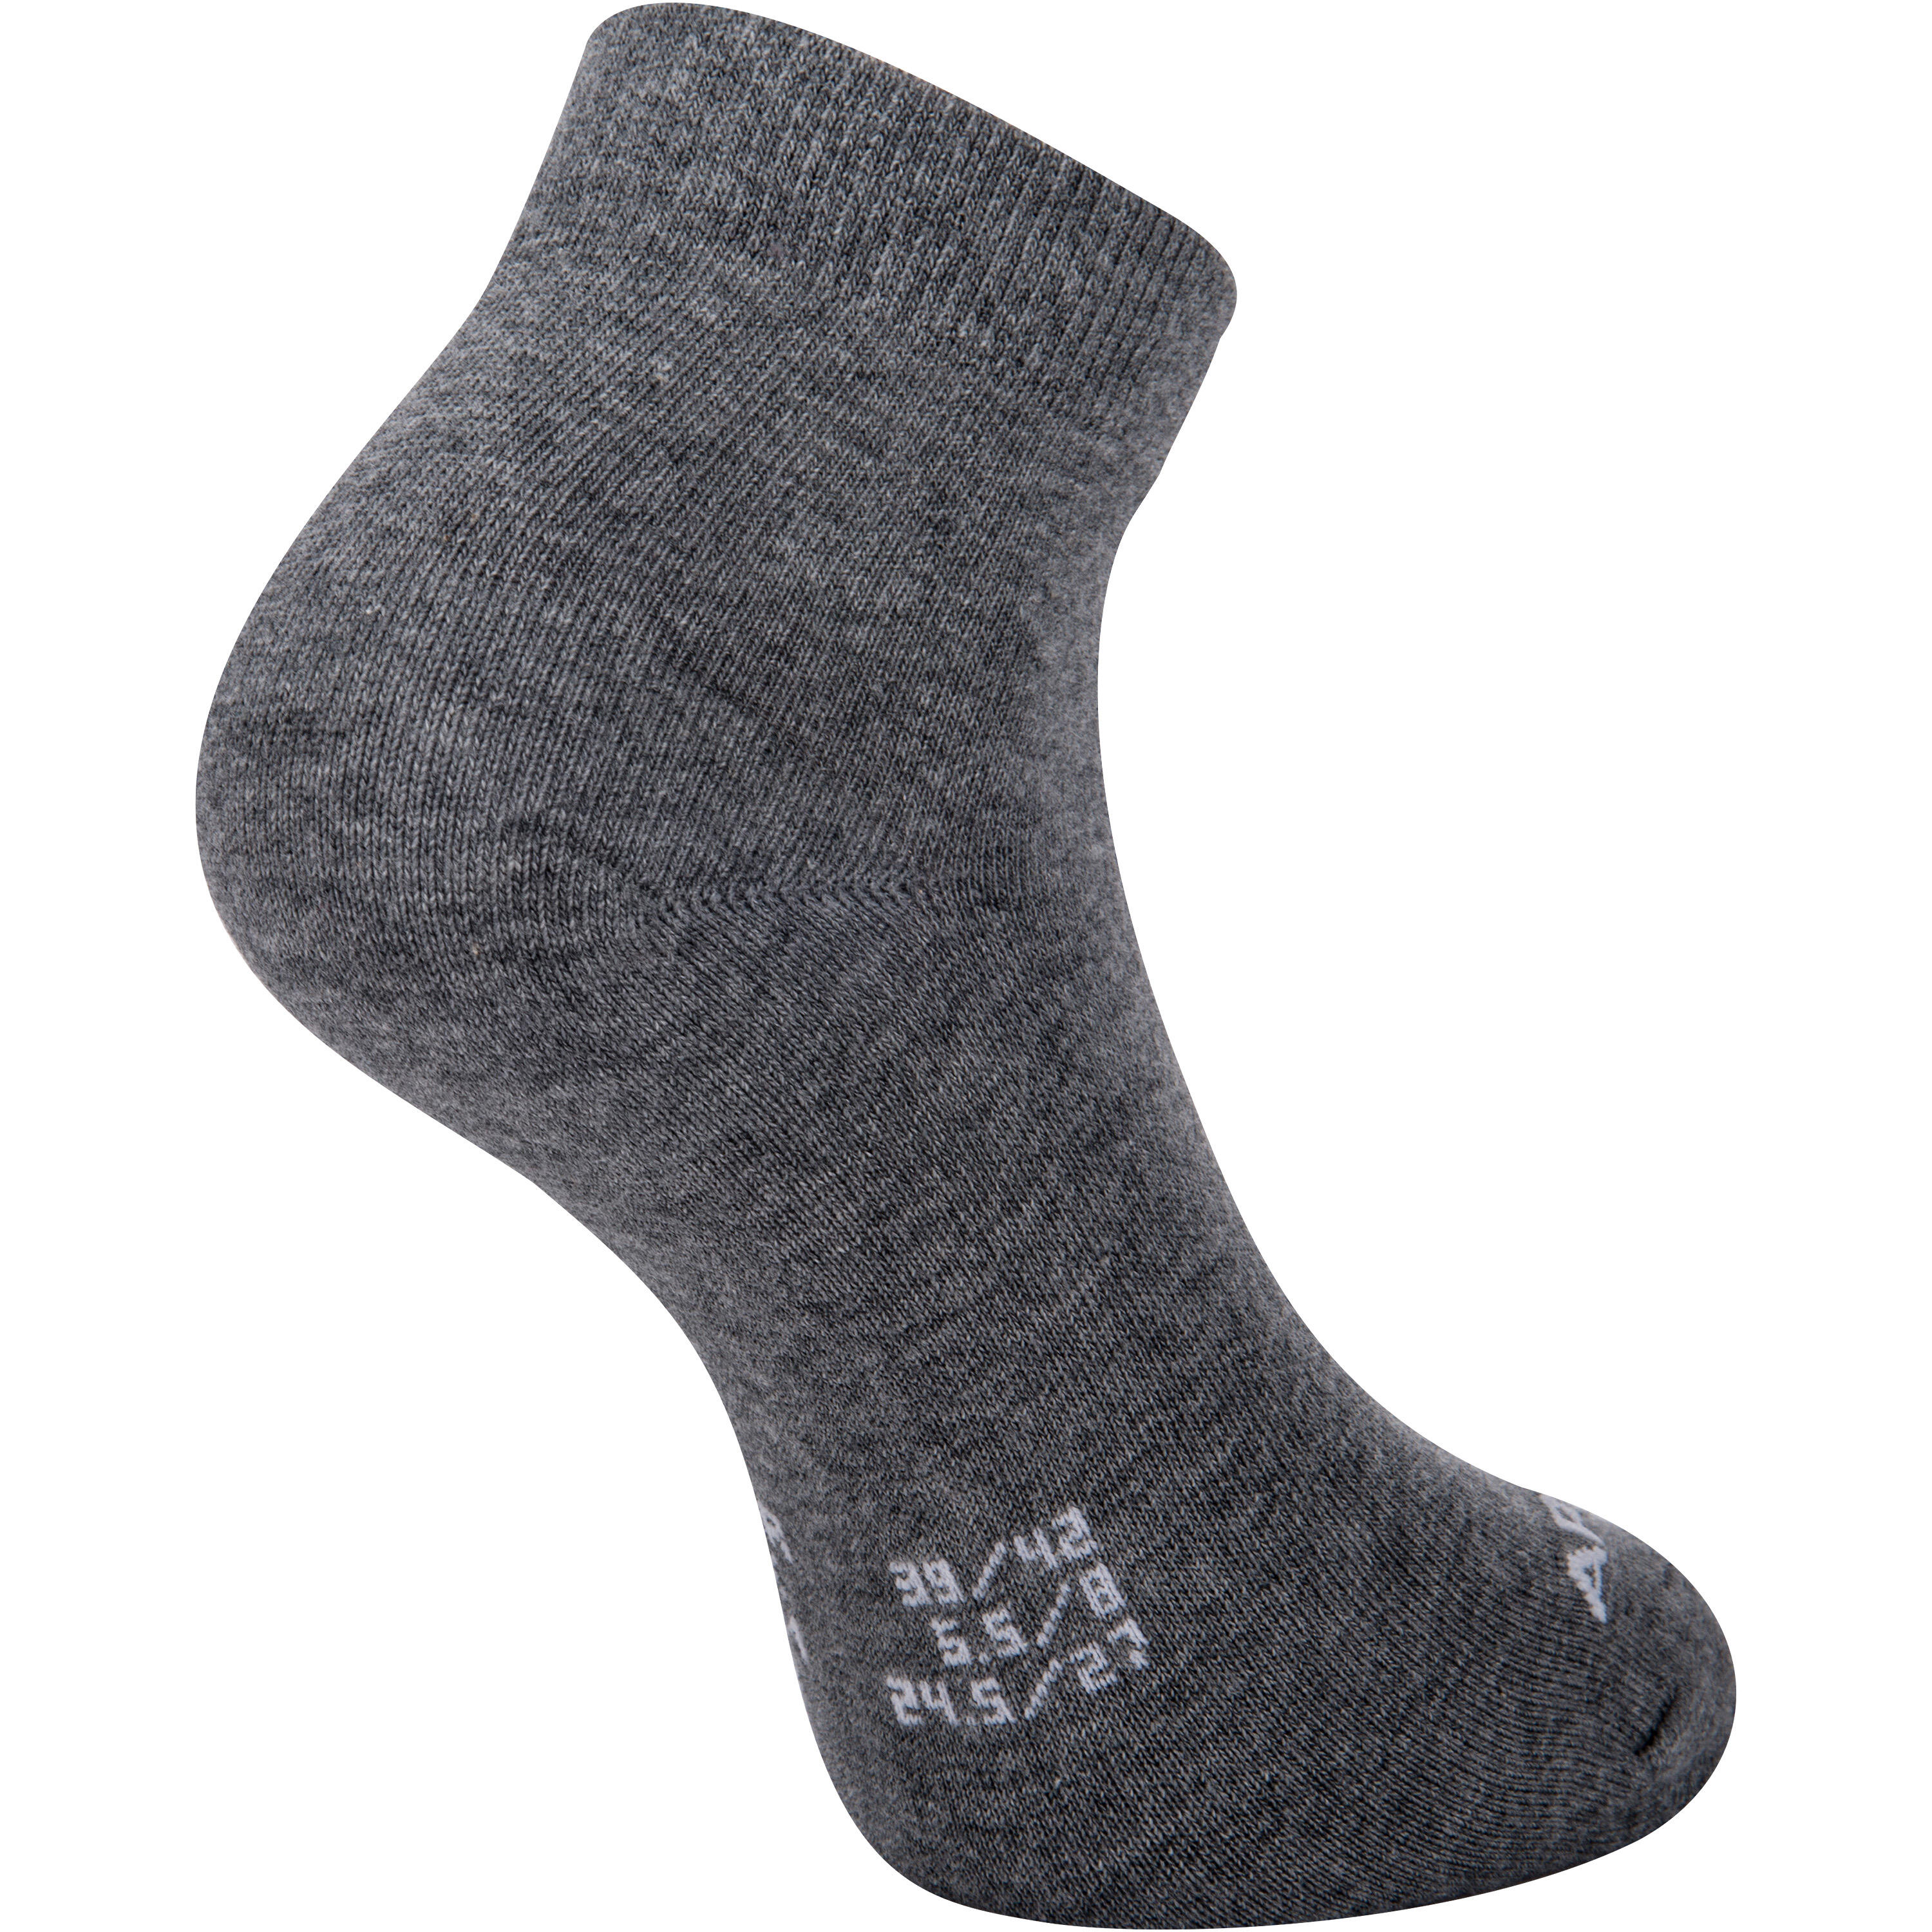 RS 160 Adult Mid Sports Socks Tri-Pack - Dark Grey 7/9